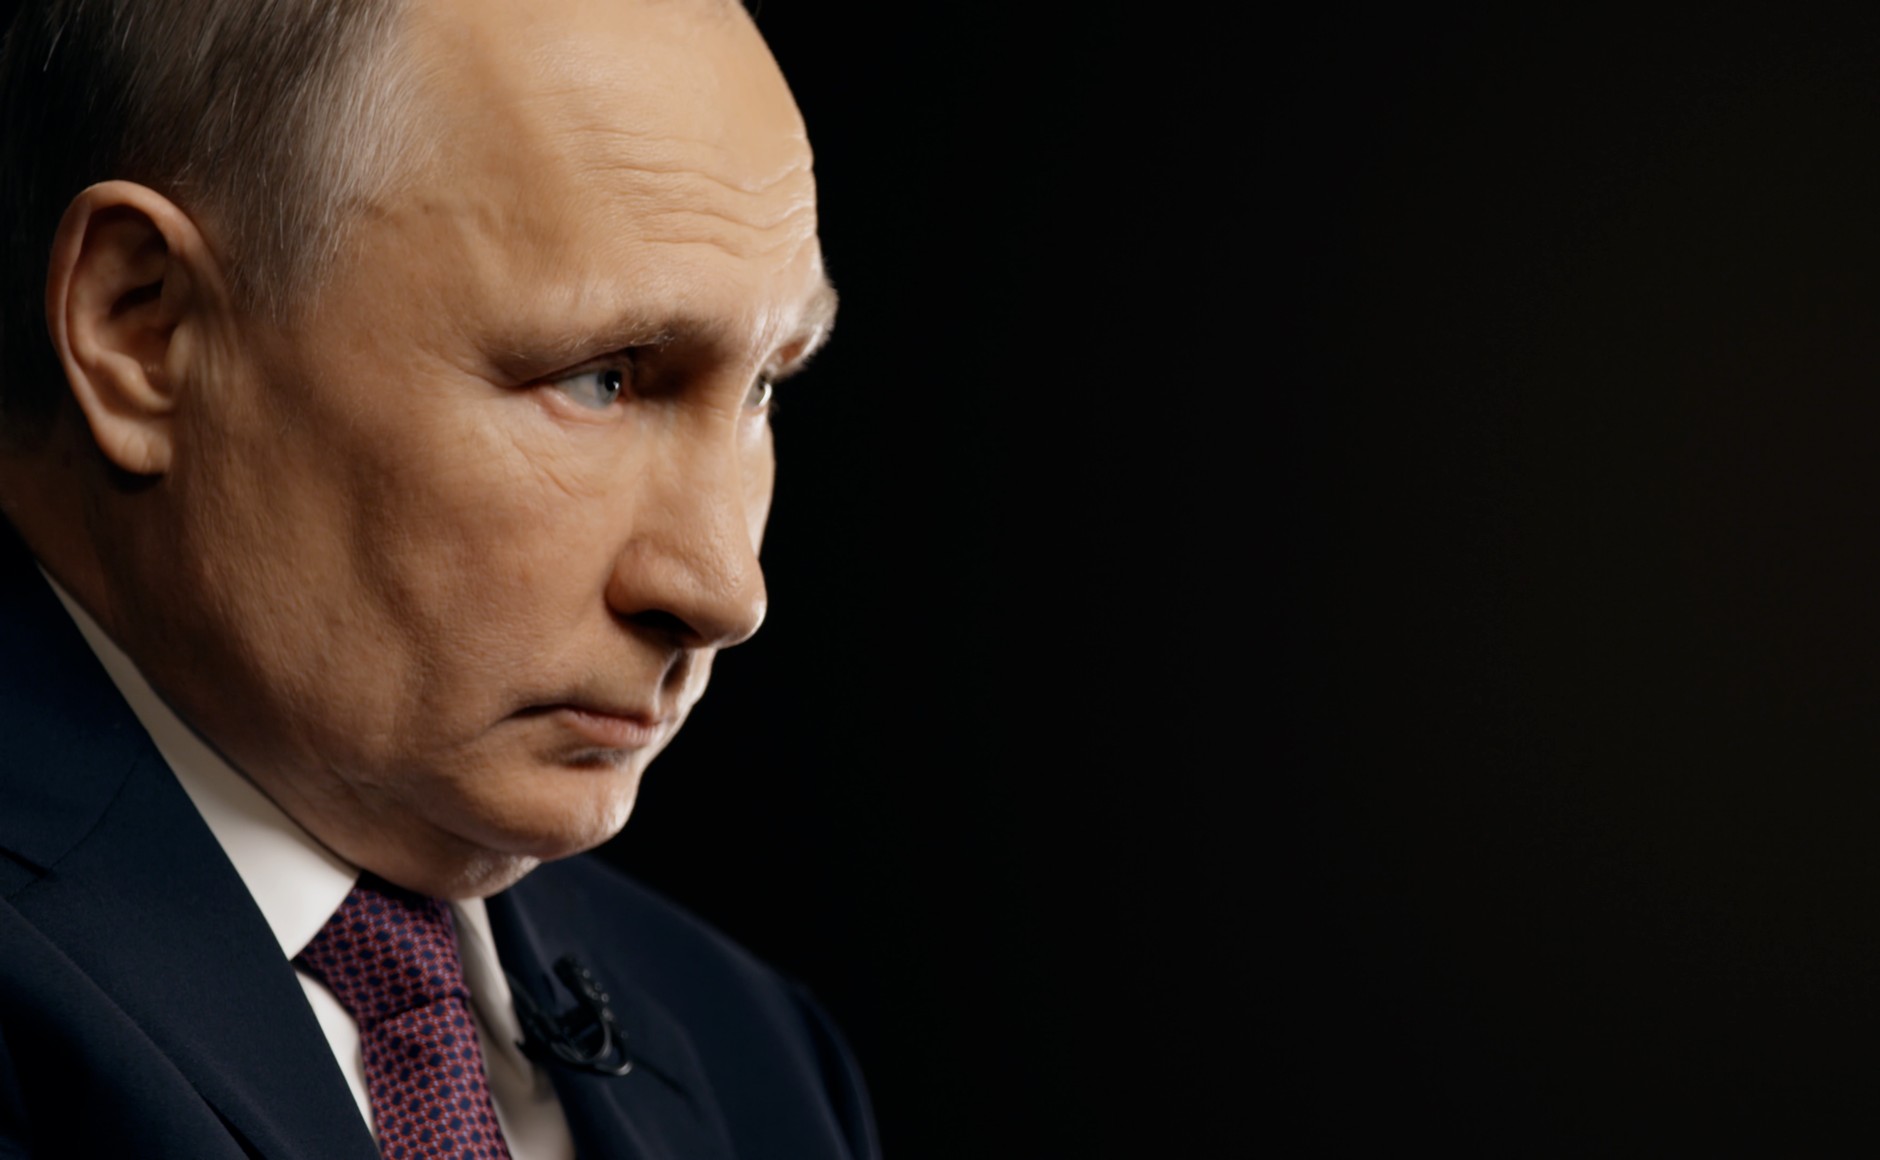 Nella foto: Vladimir Putin. Dialog si presenta come una piattaforma per facilitare i rapporti tra cittadini e governo, ma in realtà è centrale nella propaganda russa sull'Ucraina.